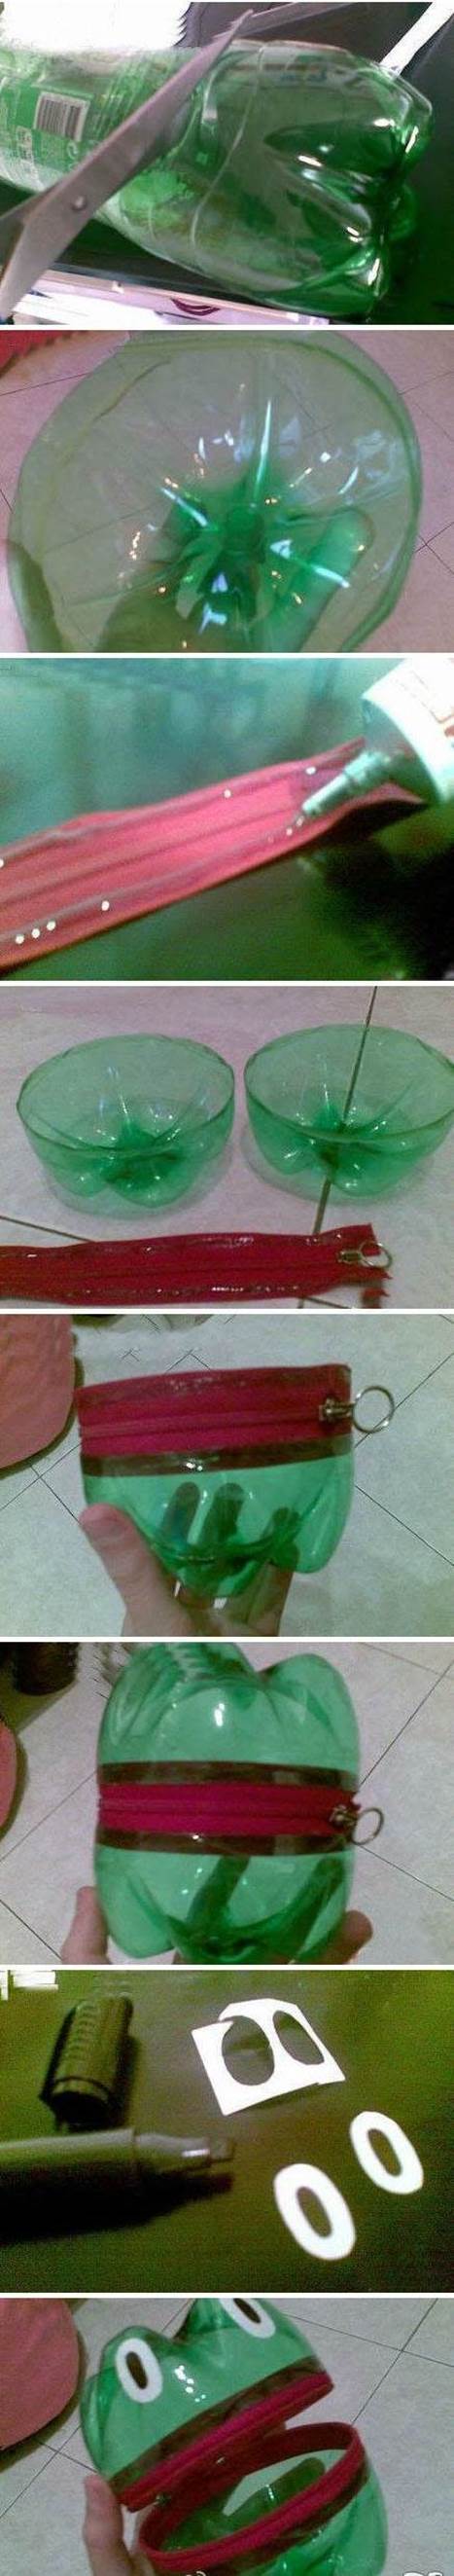 DIY Plastic Bottle Frog Change Case 2